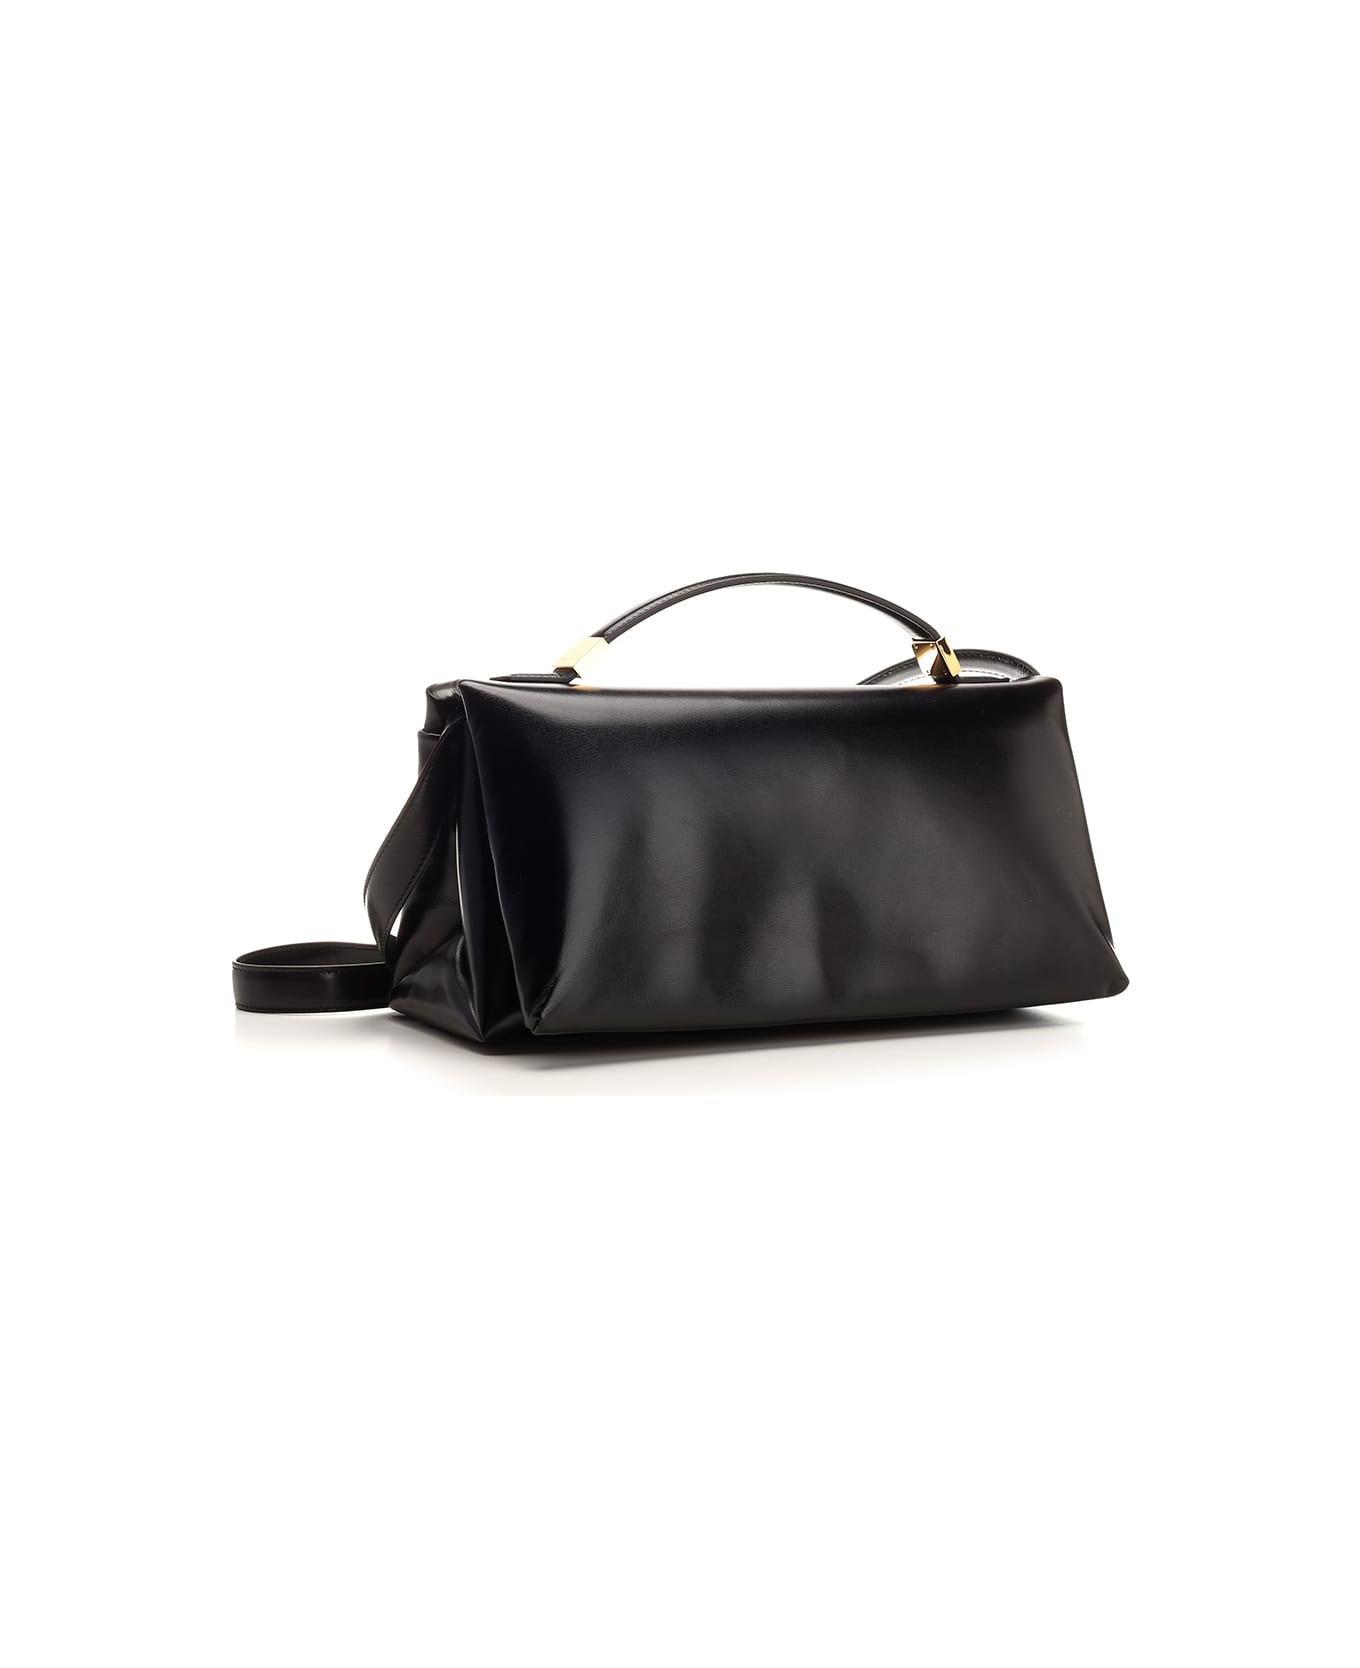 Marni Black 'prisma' Handbag - Black